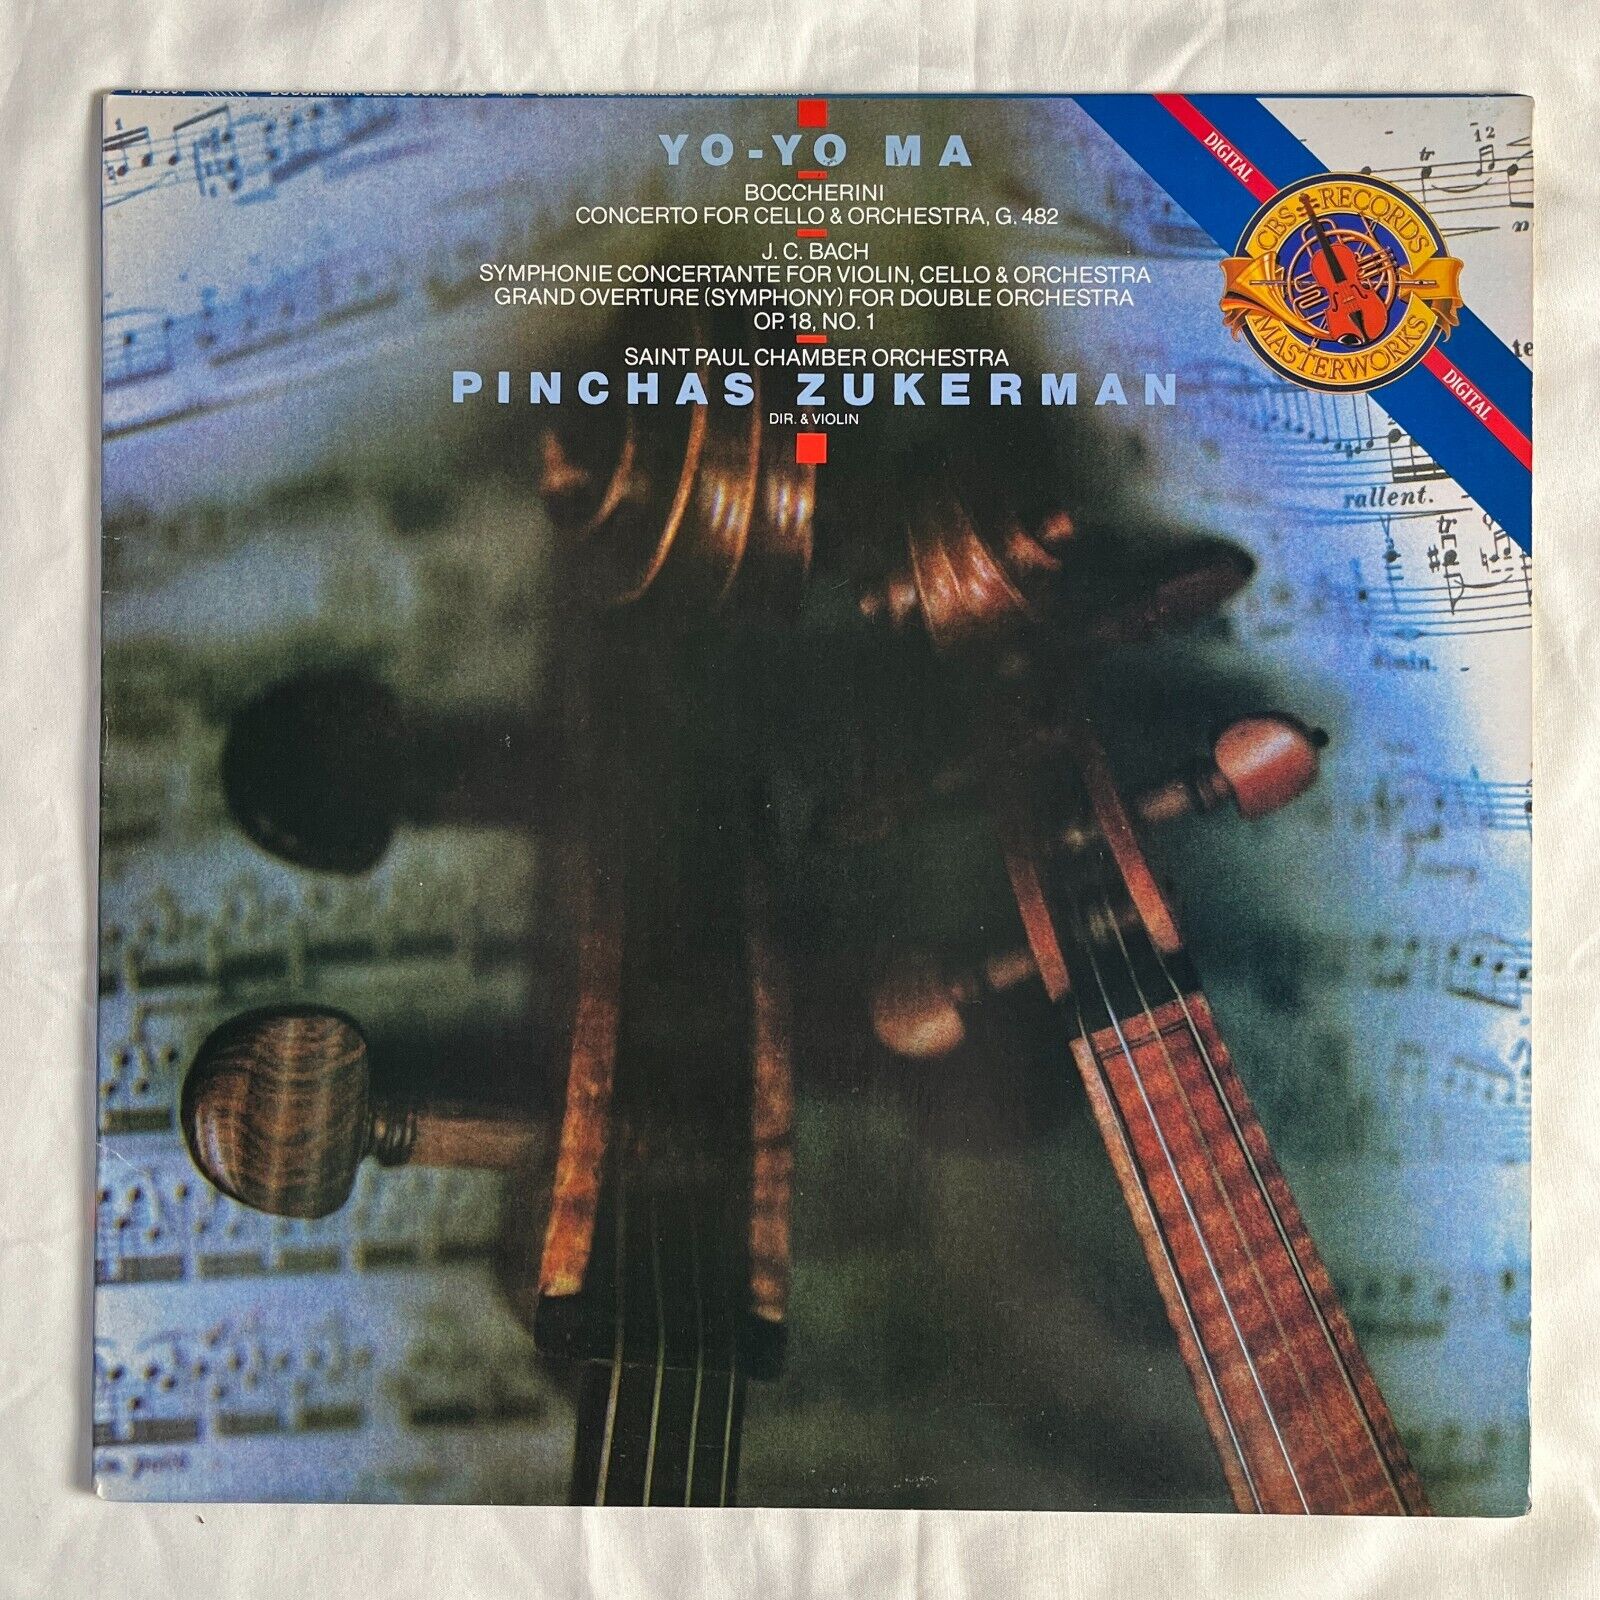 YO-YO MA Concerto For Cello & Orchestra 1987 Vinyl LP CBS M 39964 - VG+